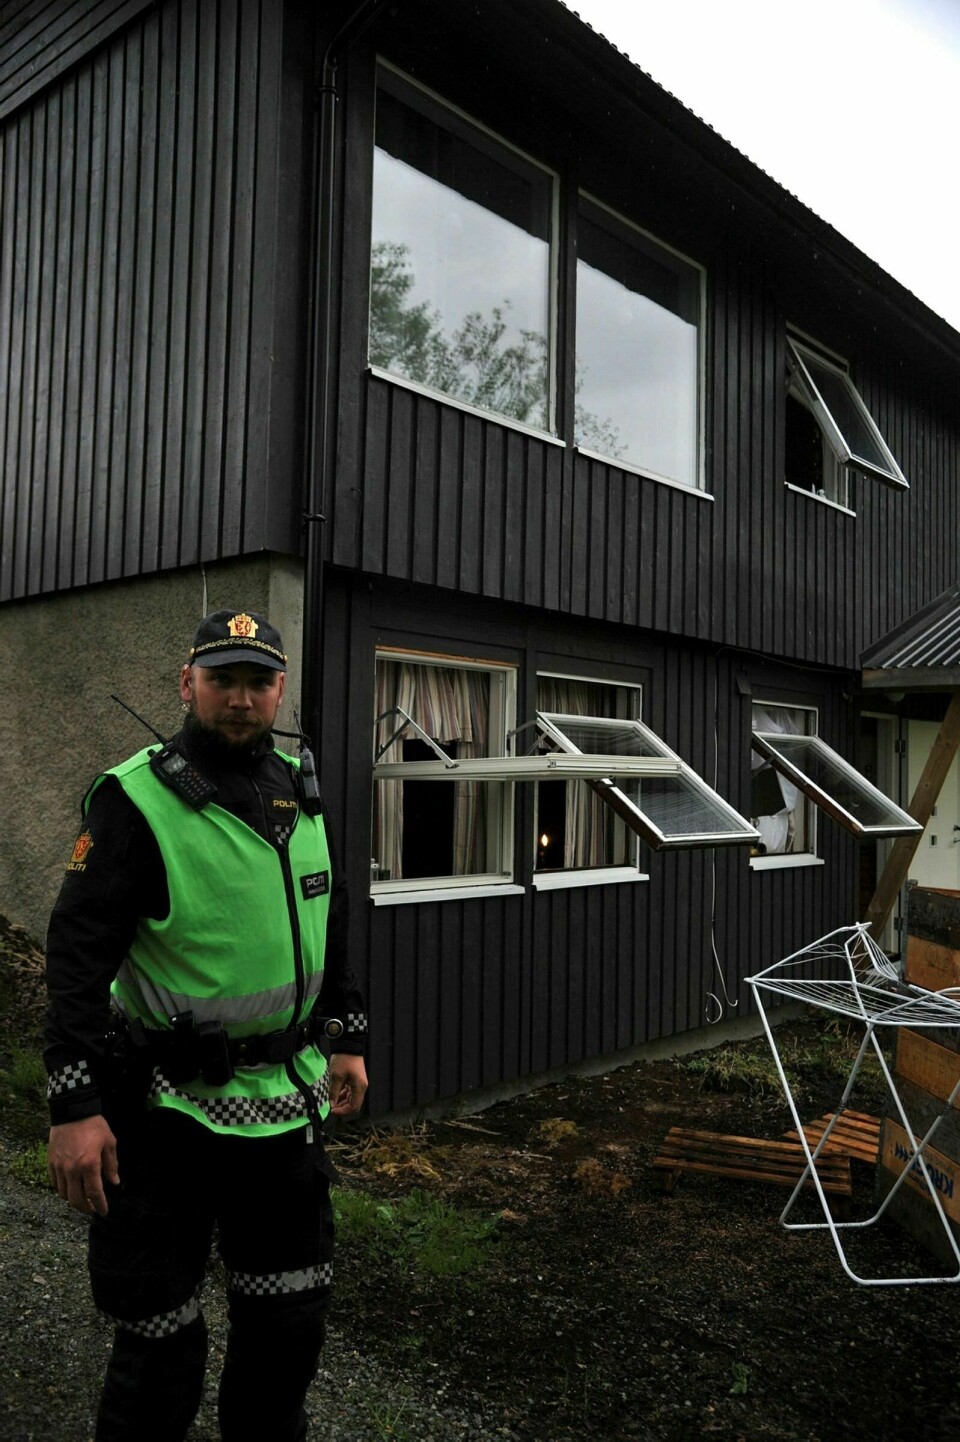 UKJENT ÅRSAK: Politiets innsatsleder på stedet, Andreas Solbakken, forteller det er for tidlig å si årsak til røykutvikling i kjellerleiligheten i bakgrunnen. Foto: Leif A. Stensland